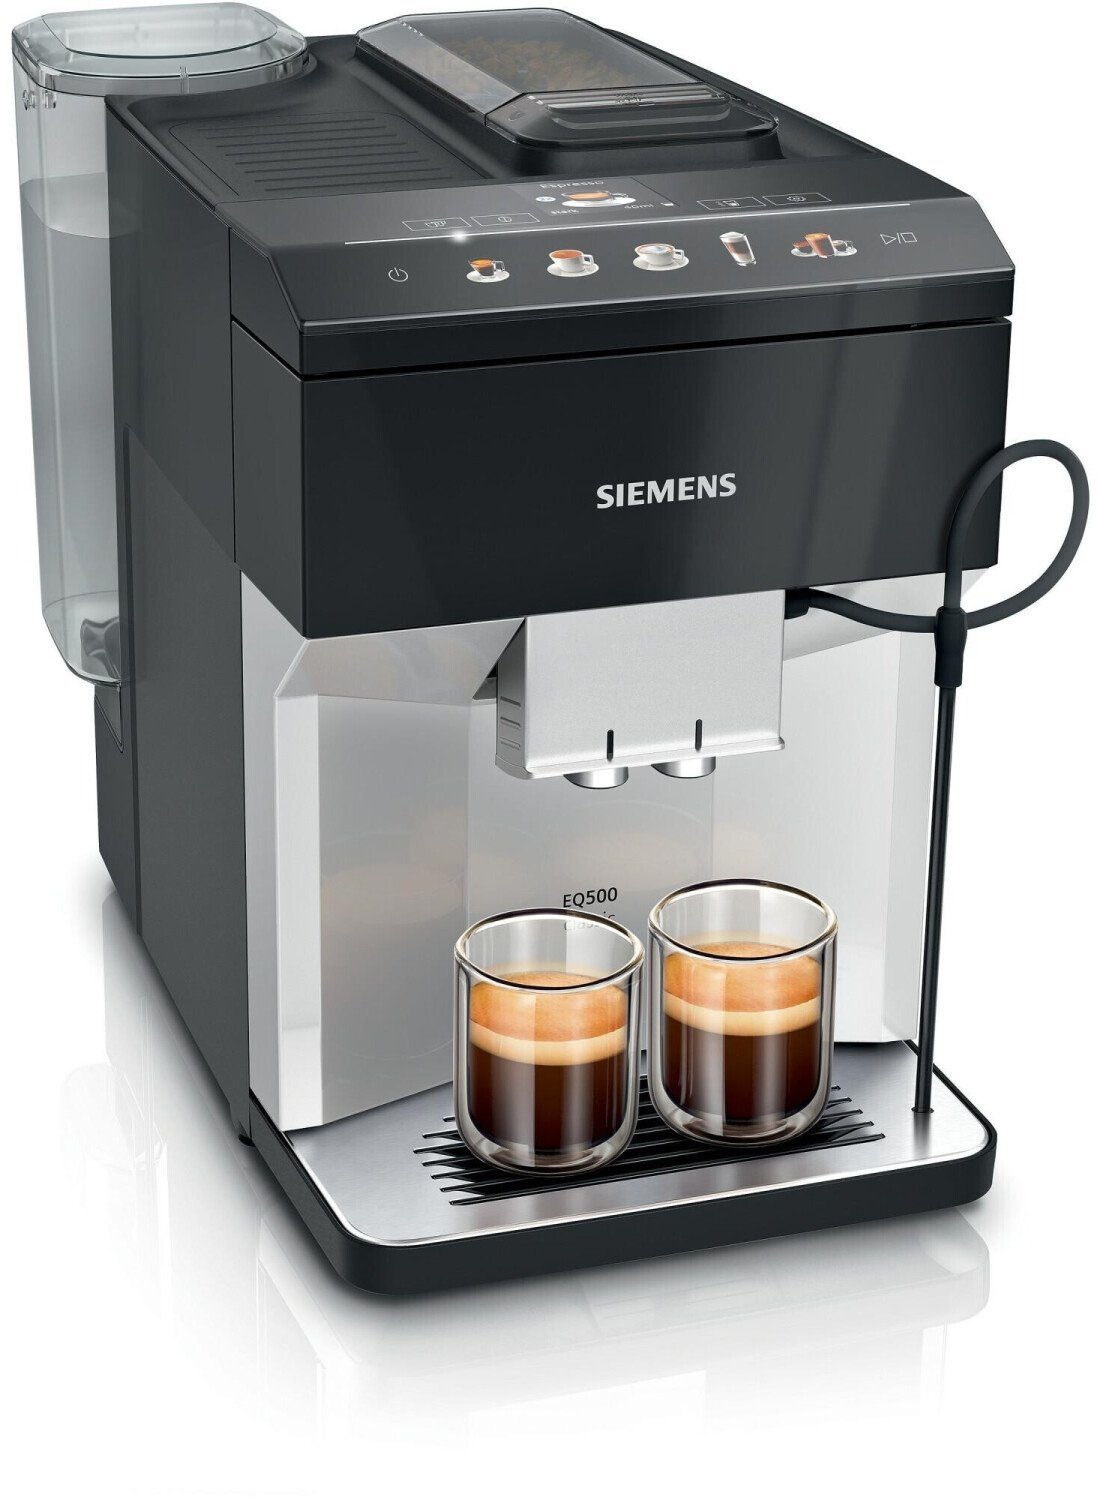 SIEMENS Kaffeevollautomat TP515D01